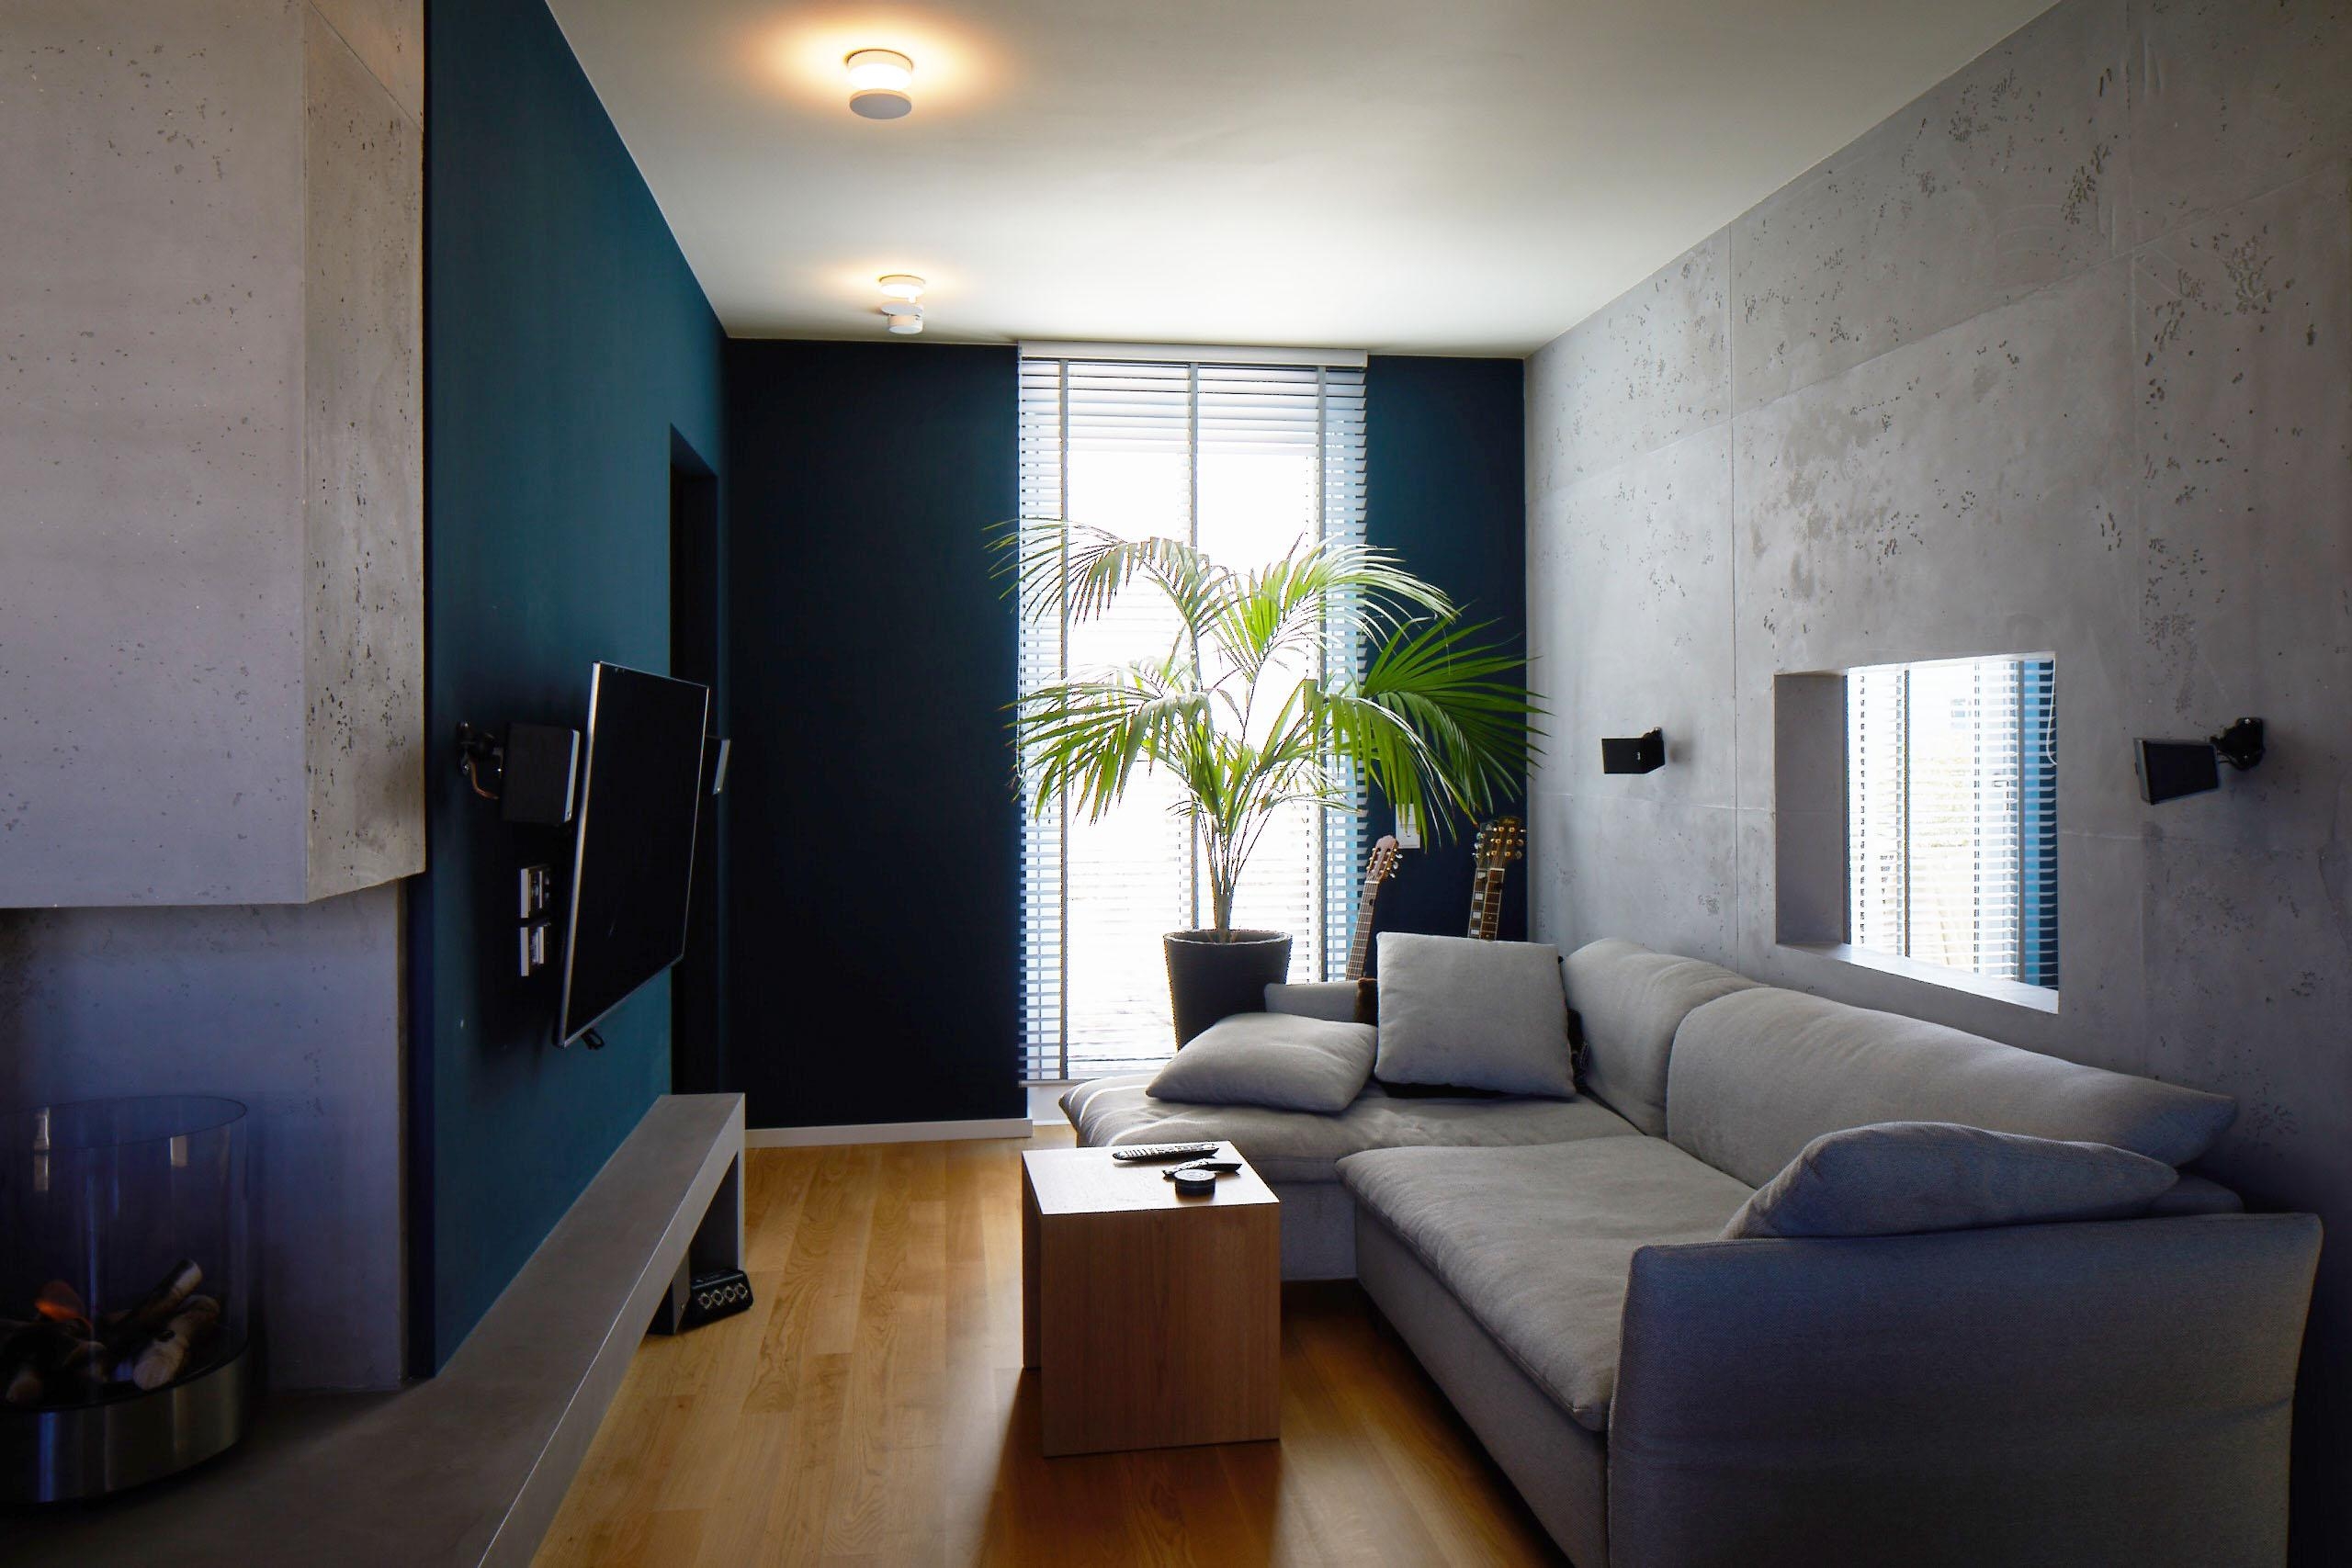 #betonoptik #wandgestaltung #wohnzimmer #loftstyle #concretedesign #interiordesign